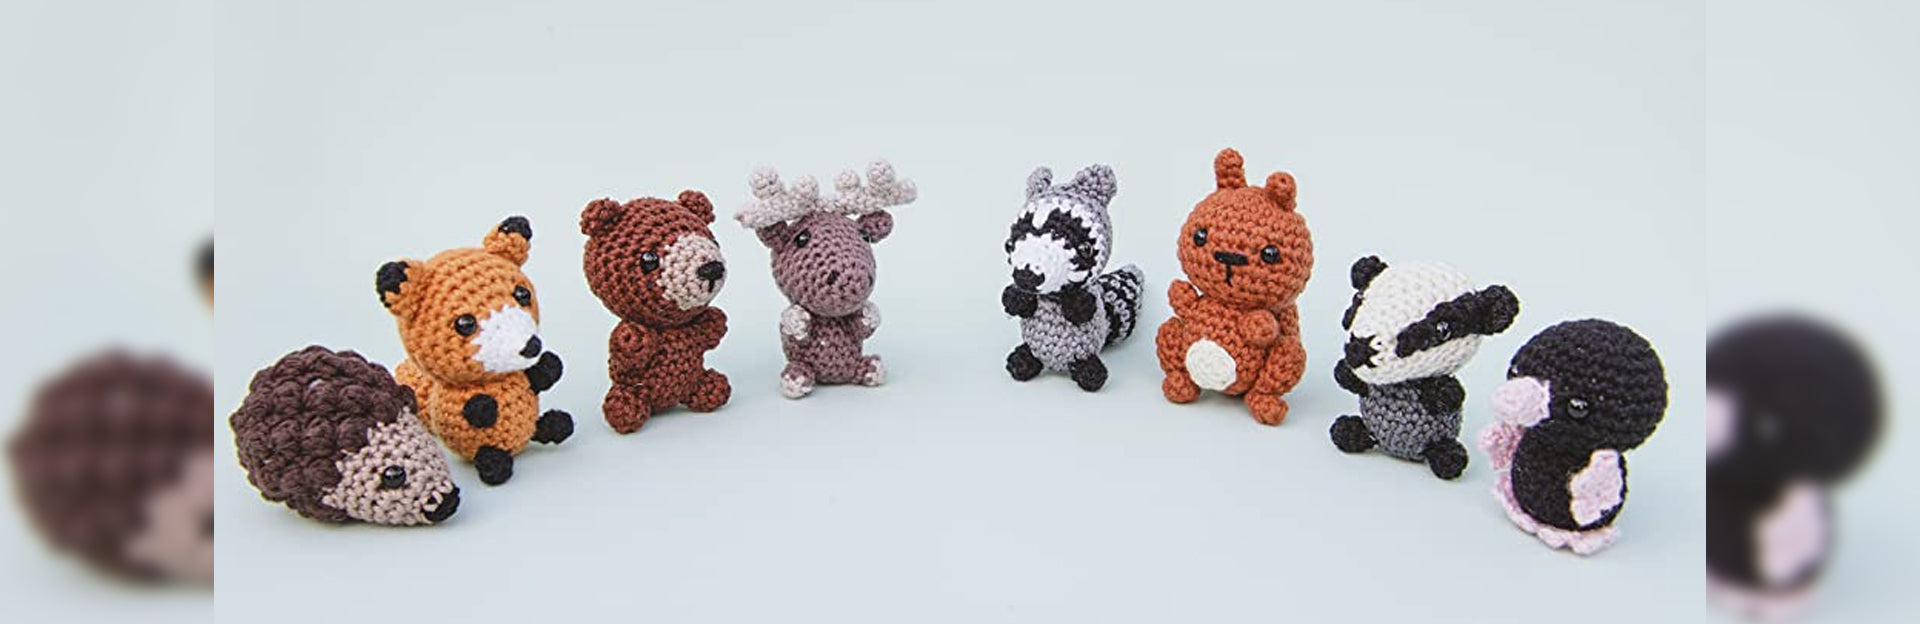 Beginner Sheep Crochet Kit Easy Crochet Starter Kit Crochet Animals Kit  Amigurumi Kit Crochet Gift Animal Crochet Store 